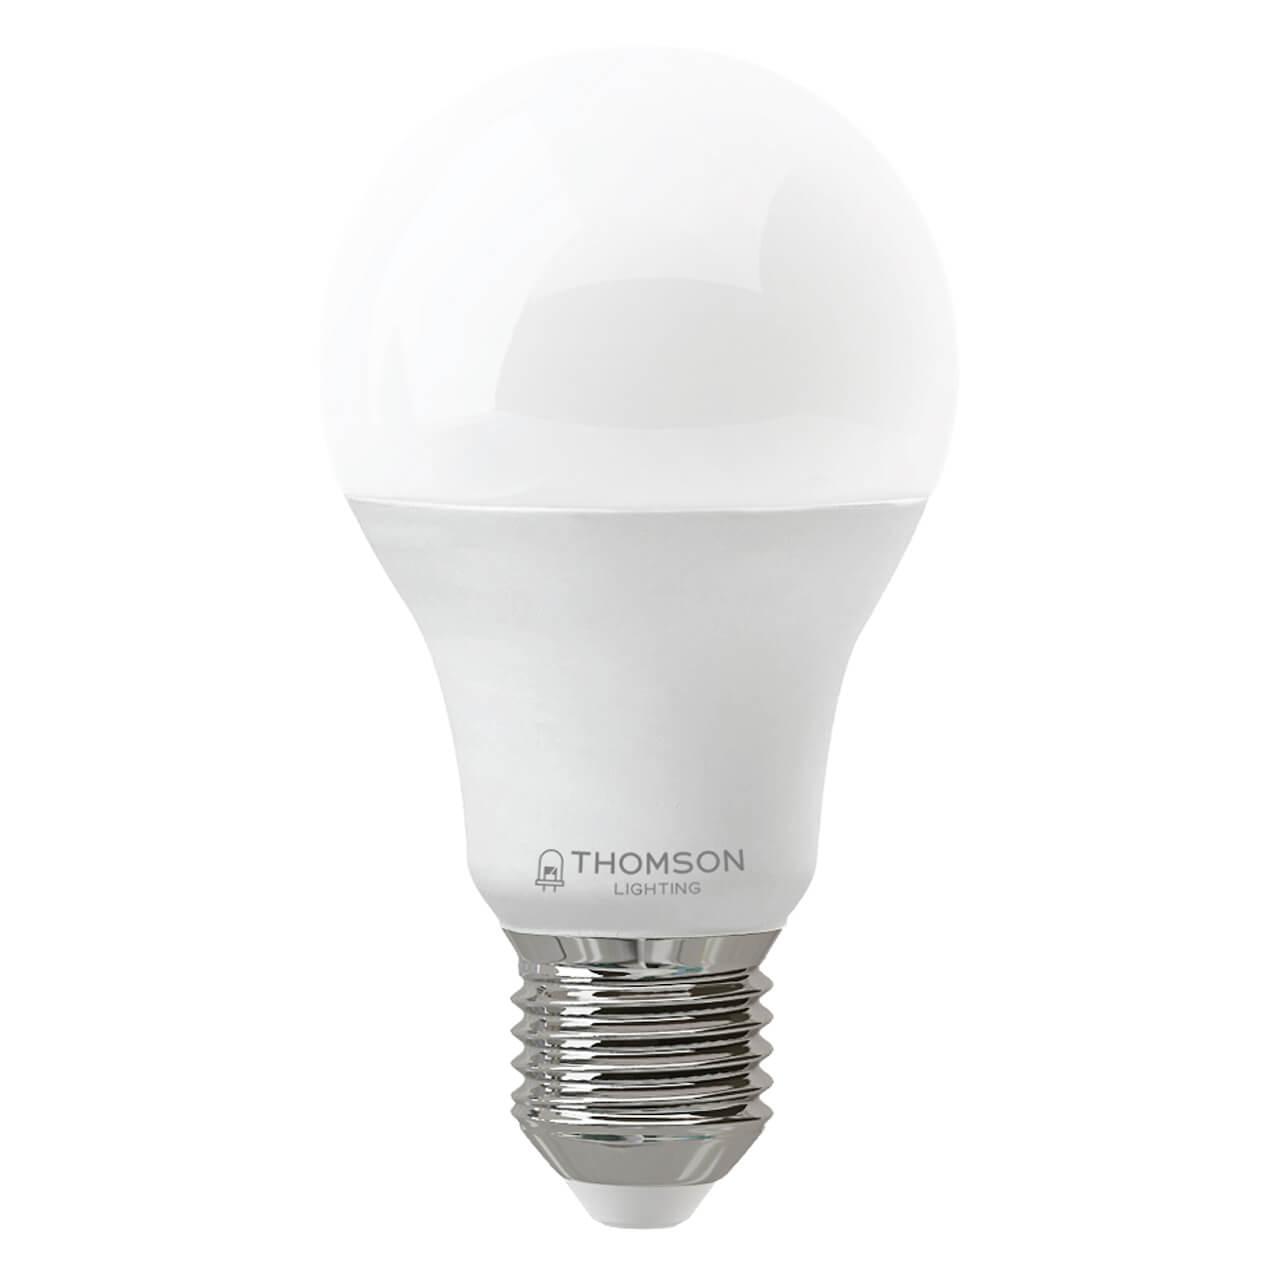 TH-B2350 Лампа светодиодная E27 21W 6500K груша матовая Thomson